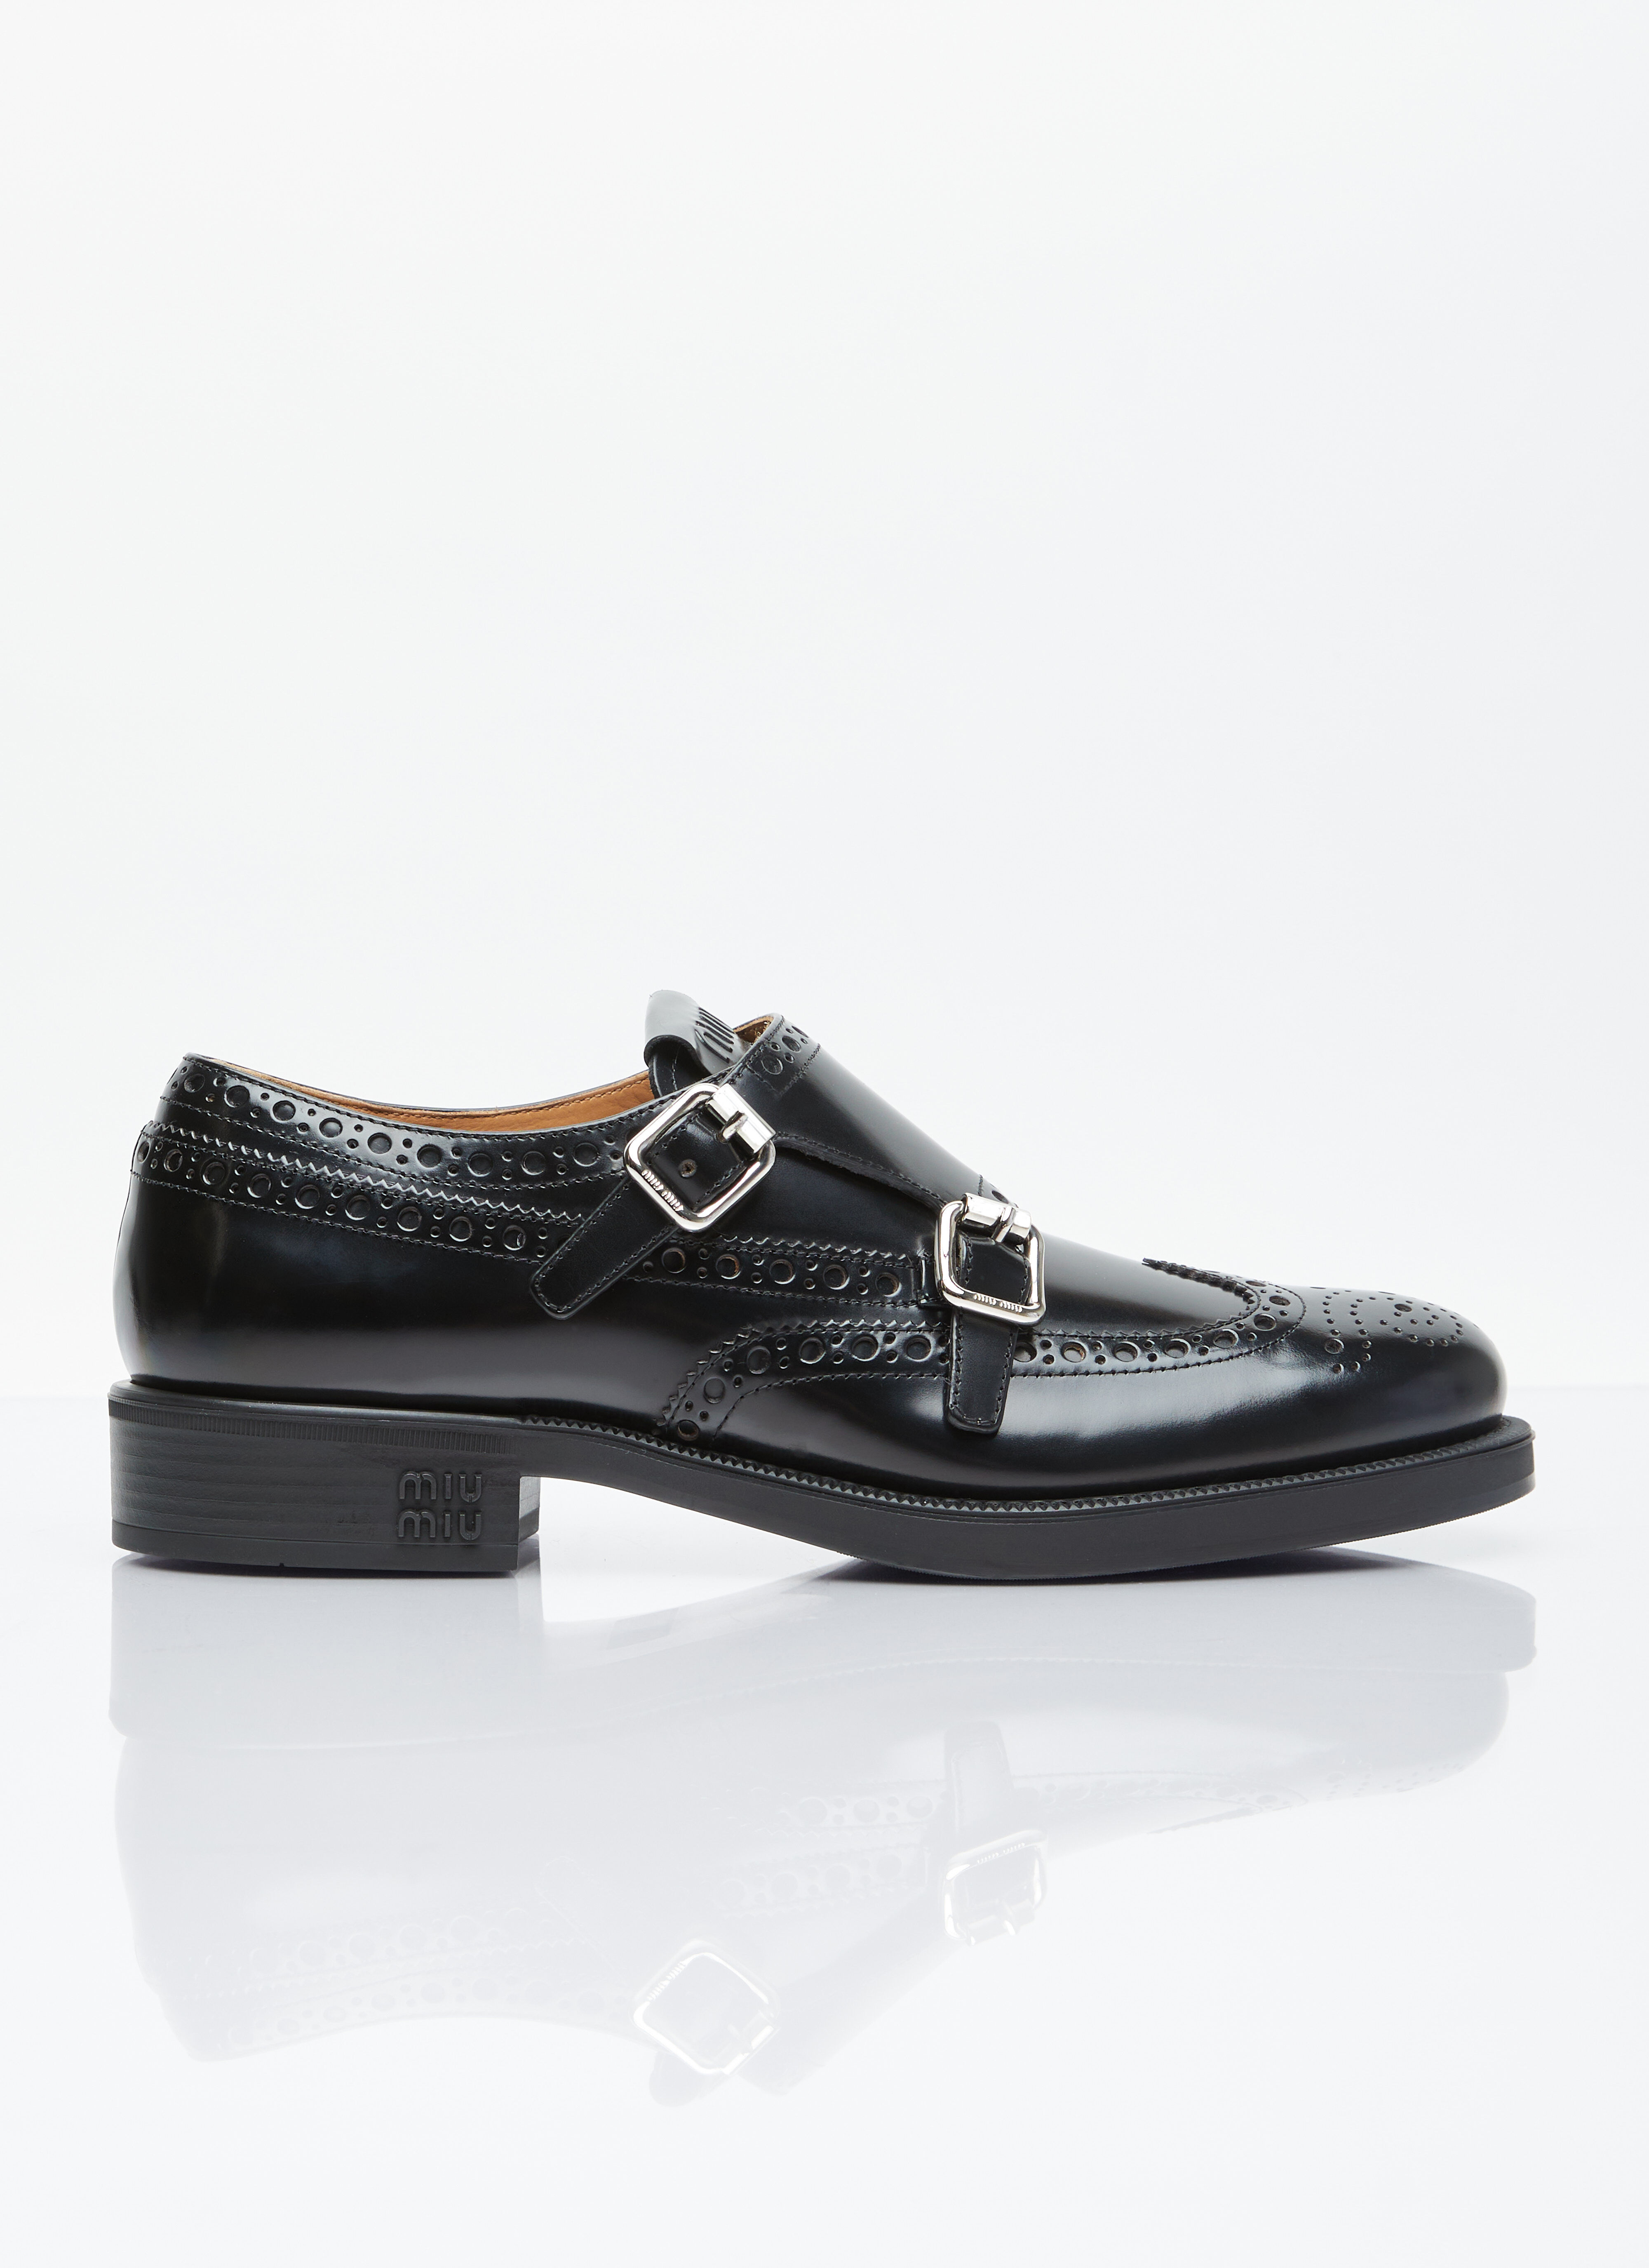 Miu Miu x Church's Brushed Leather Double Monk Brogue Shoes Beige miu0256047